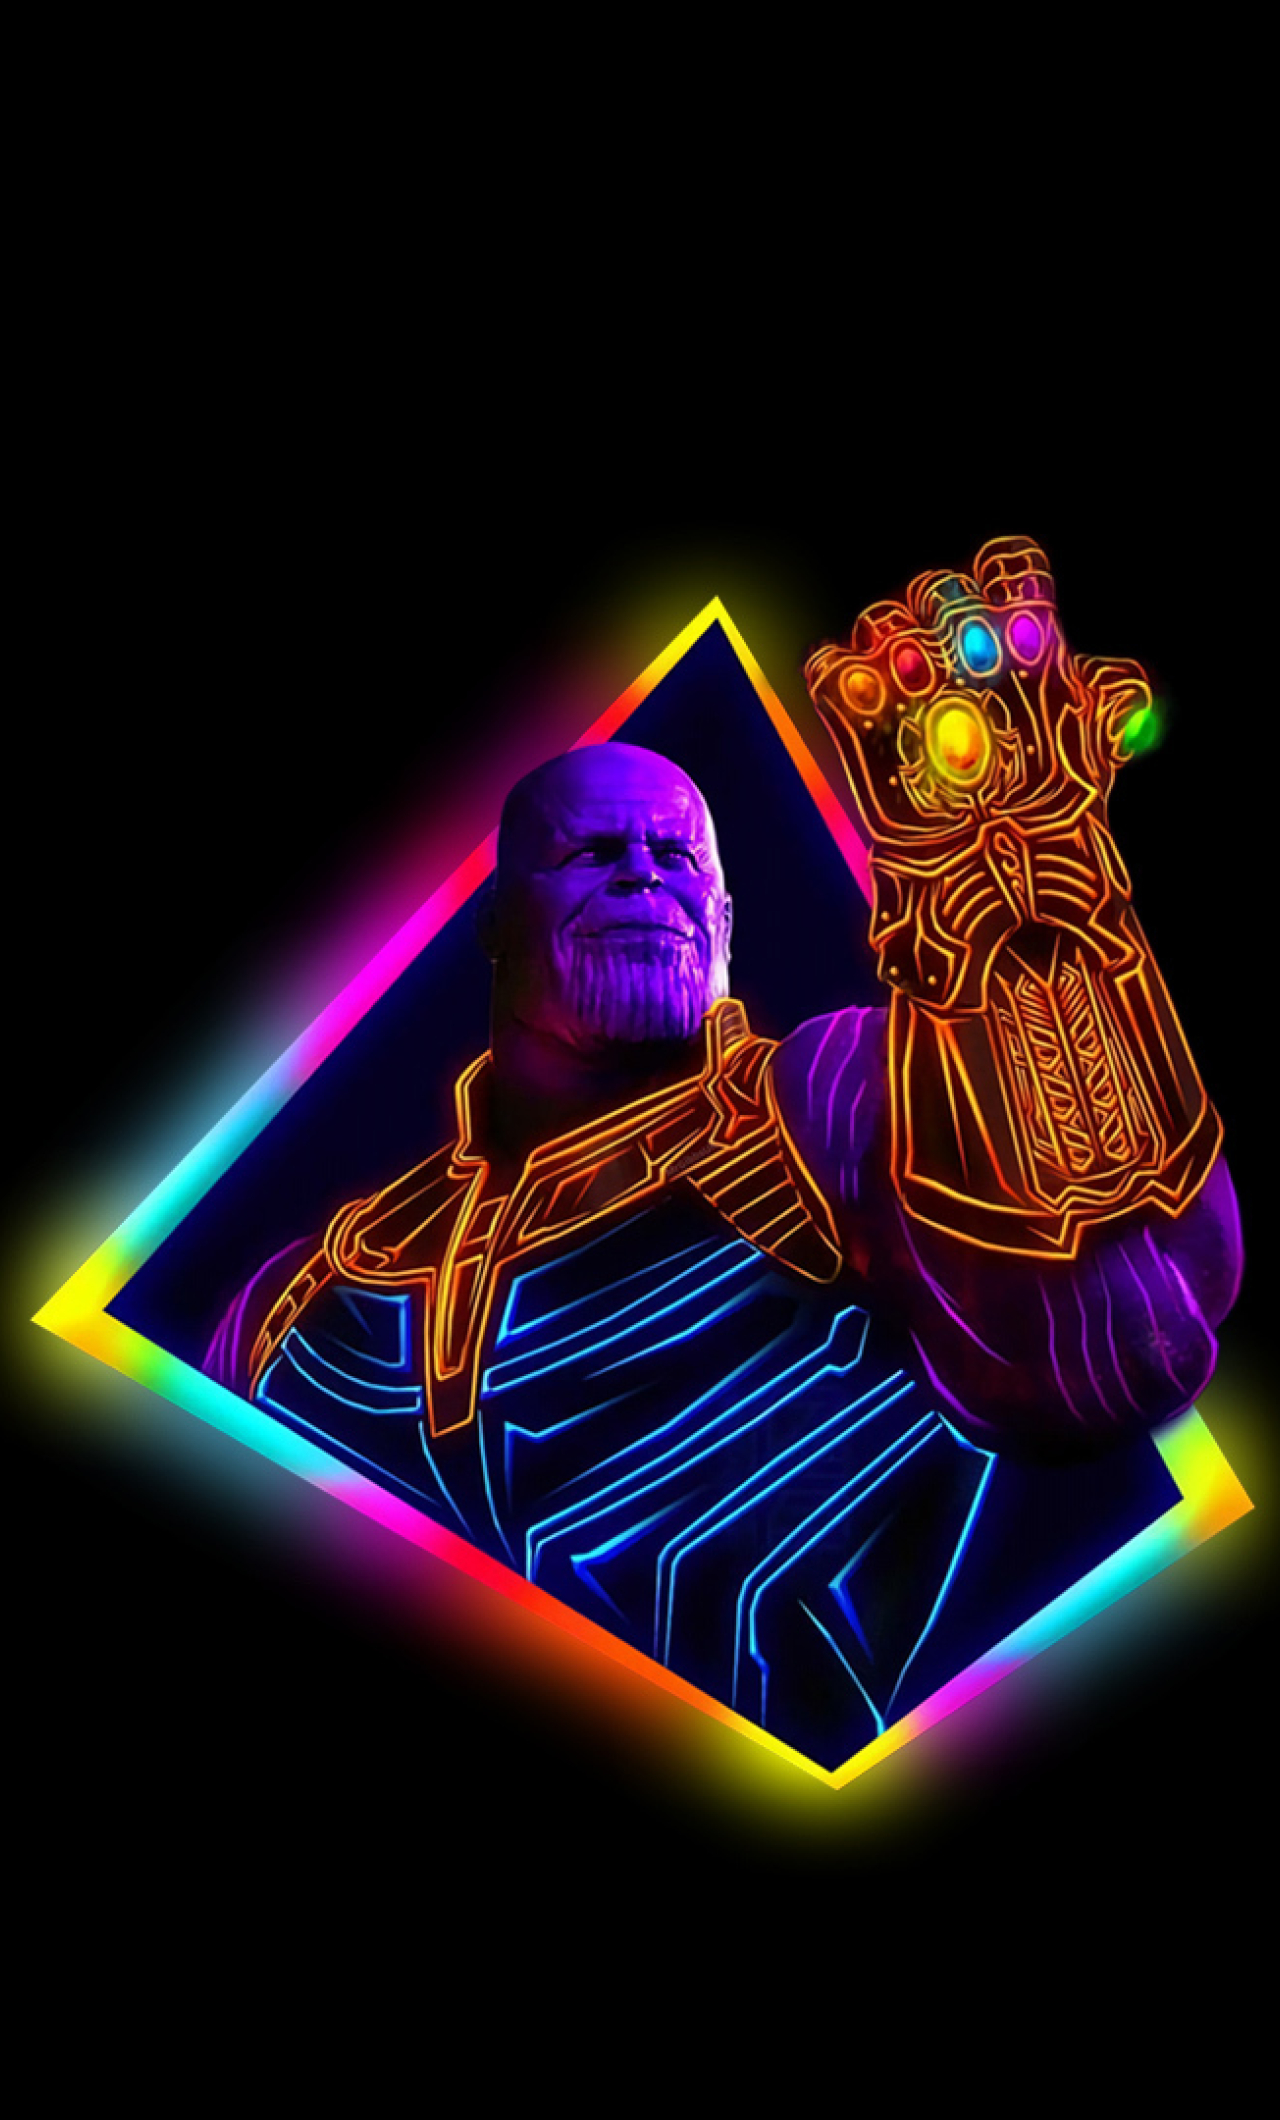  Thanos  Avengers Infinity War 80s Outrun Art Full HD  Wallpaper 